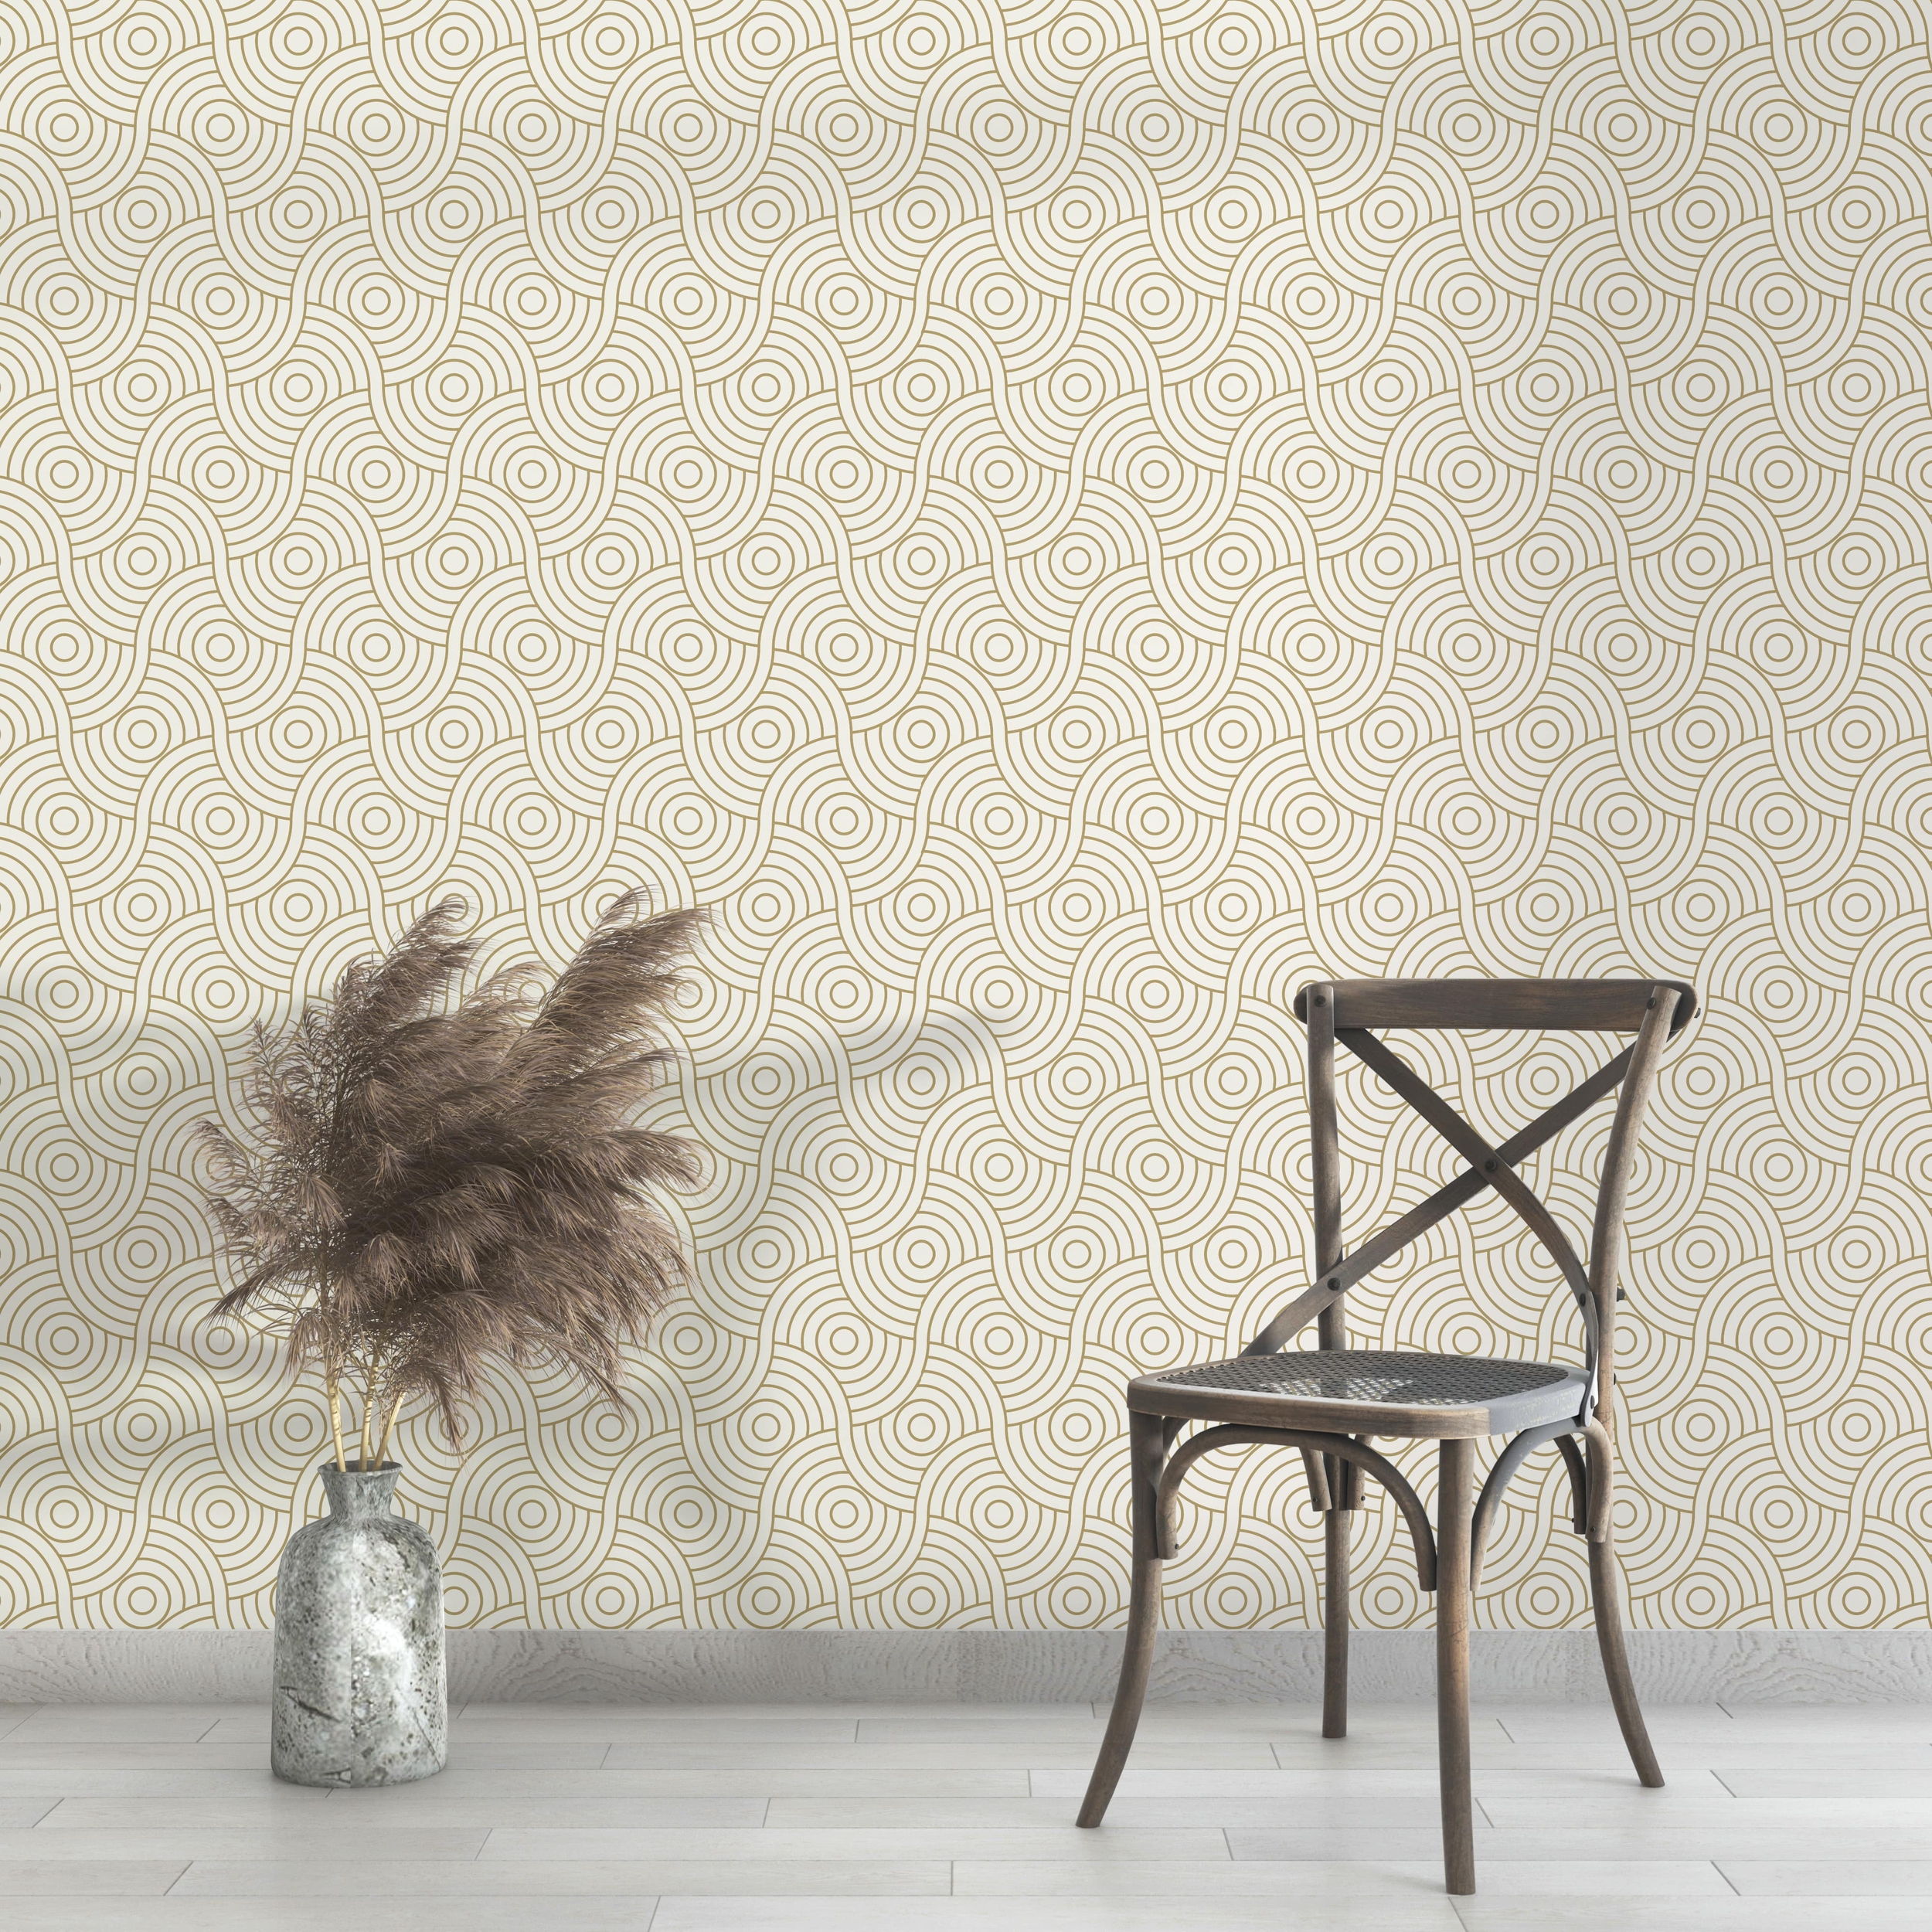 PP41-mur-papier-peint-adhesif-decoratif-revetement-vinyle-rond-géométriques-croisés-renovation-meuble-mur-min